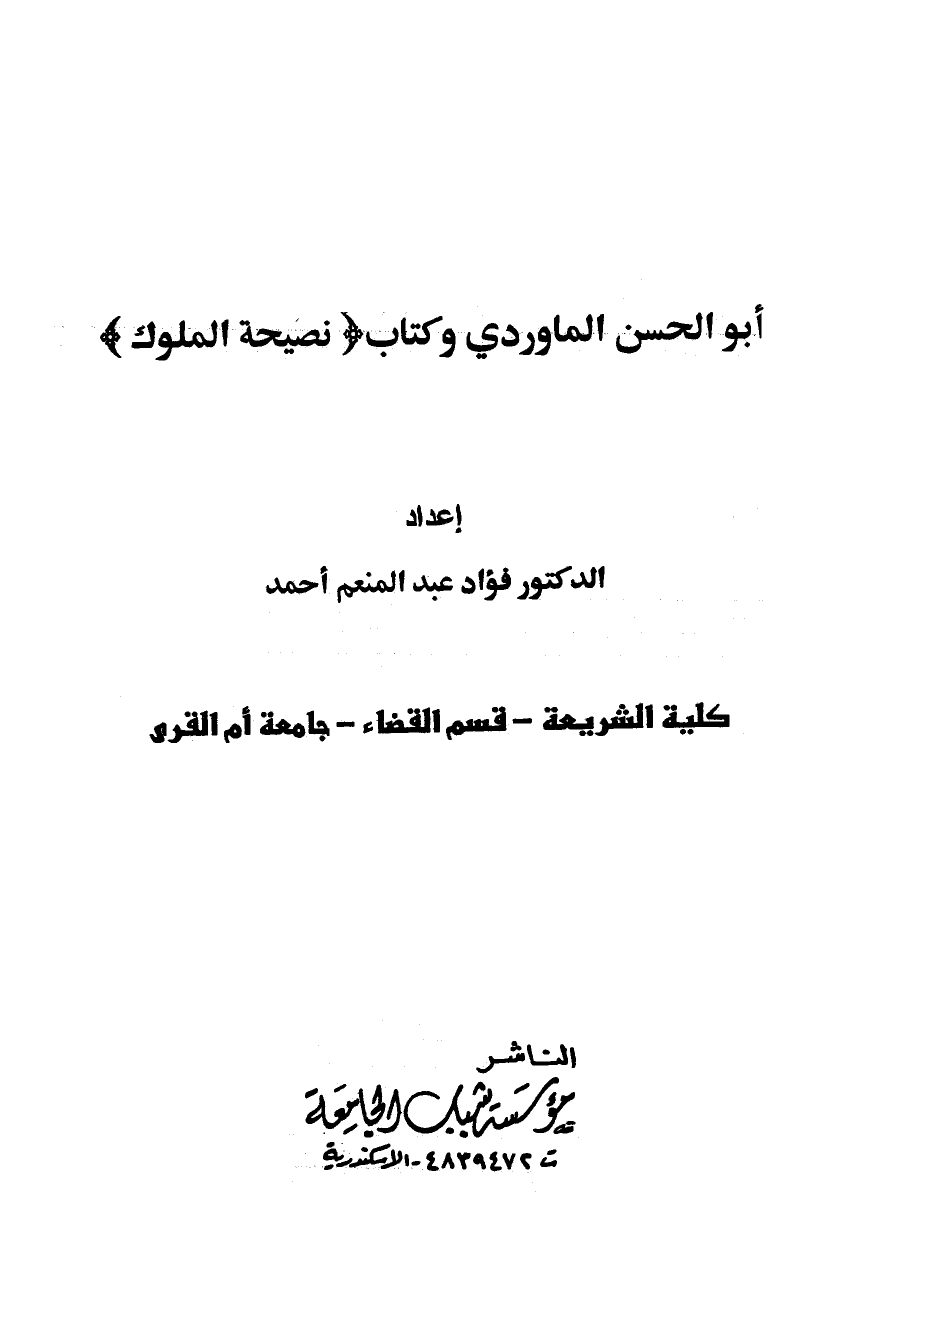 تنزيل وتحميل كتاِب أبو الحسن الماوردي وكتاب نصيحة الملوك pdf برابط مباشر مجاناً 